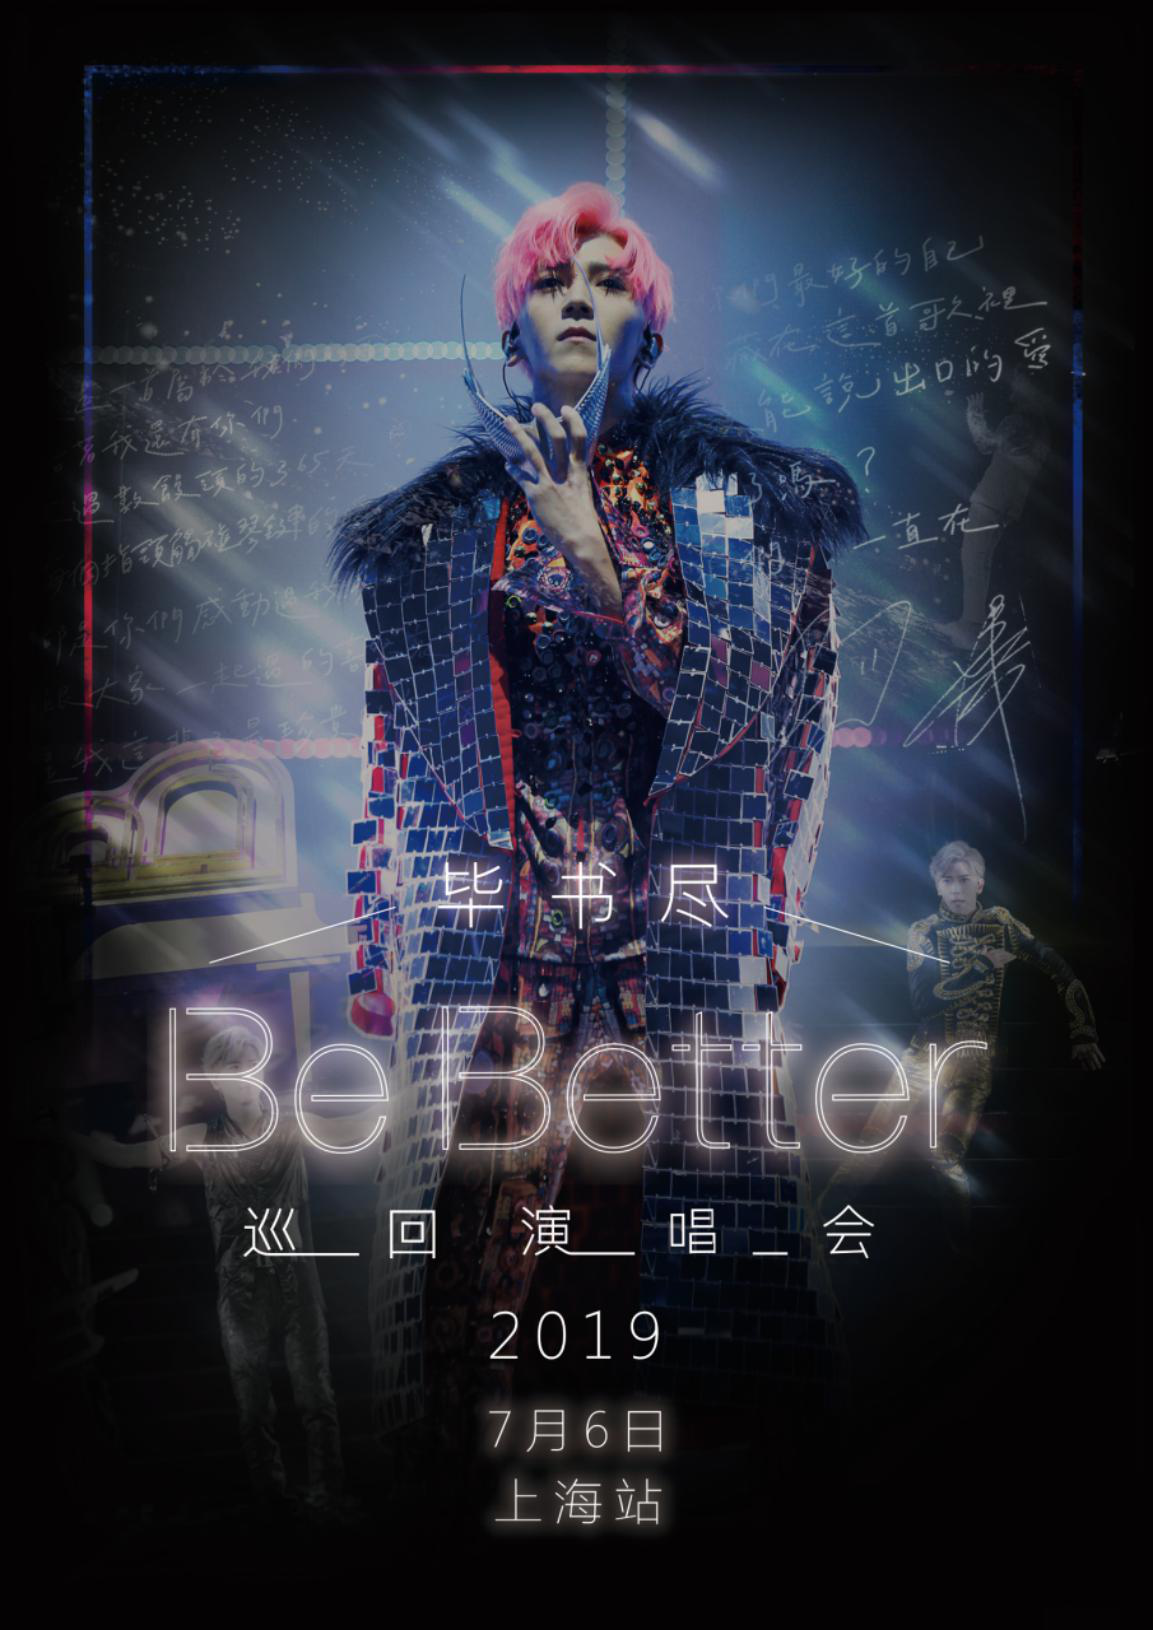 2019毕书尽“Be better”巡回演唱会 上海站